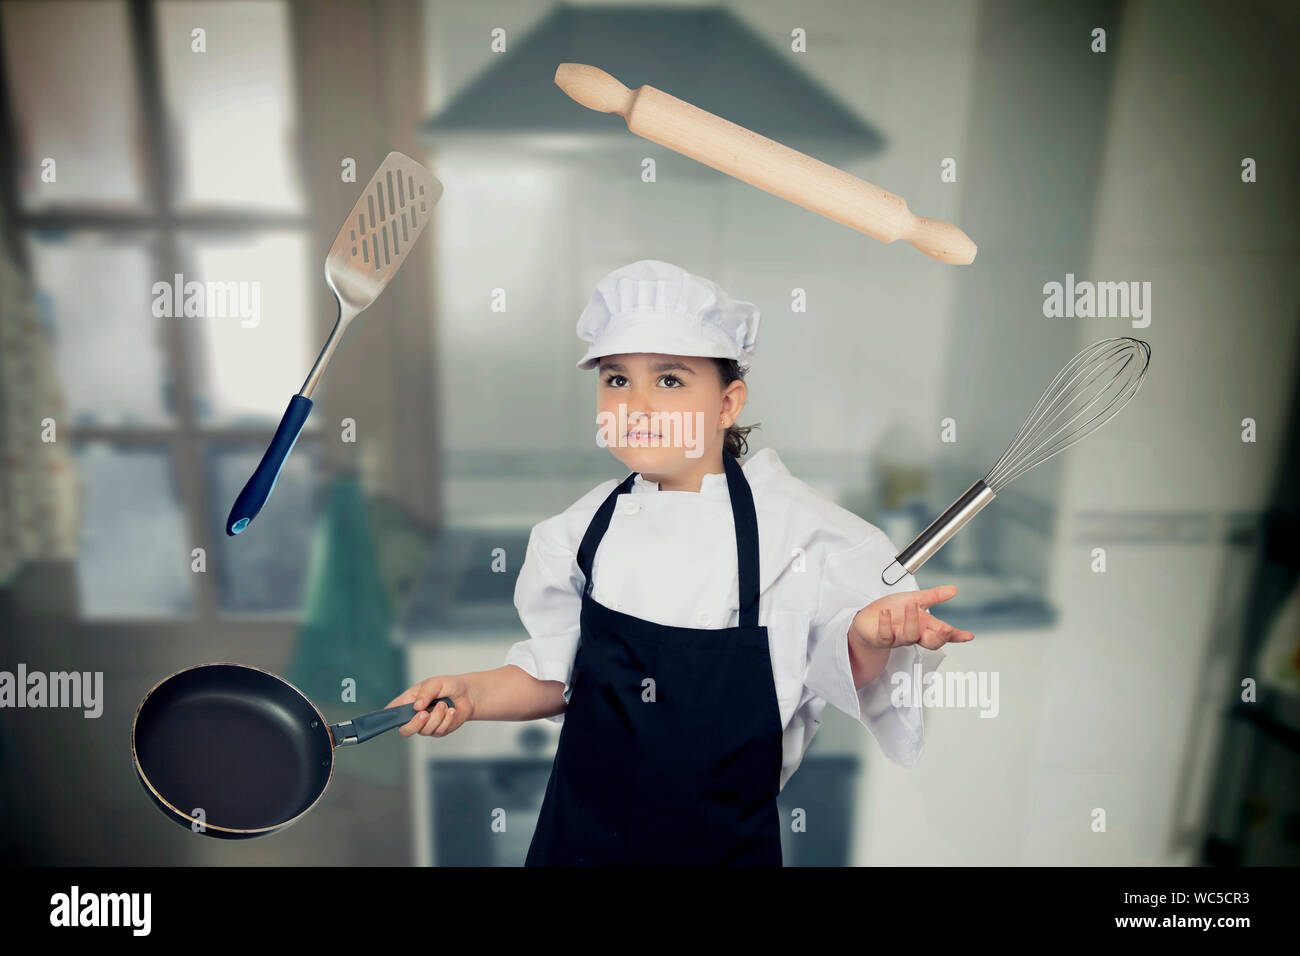 La ragazza di Chef bianchi giocando con utensili da cucina Foto Stock